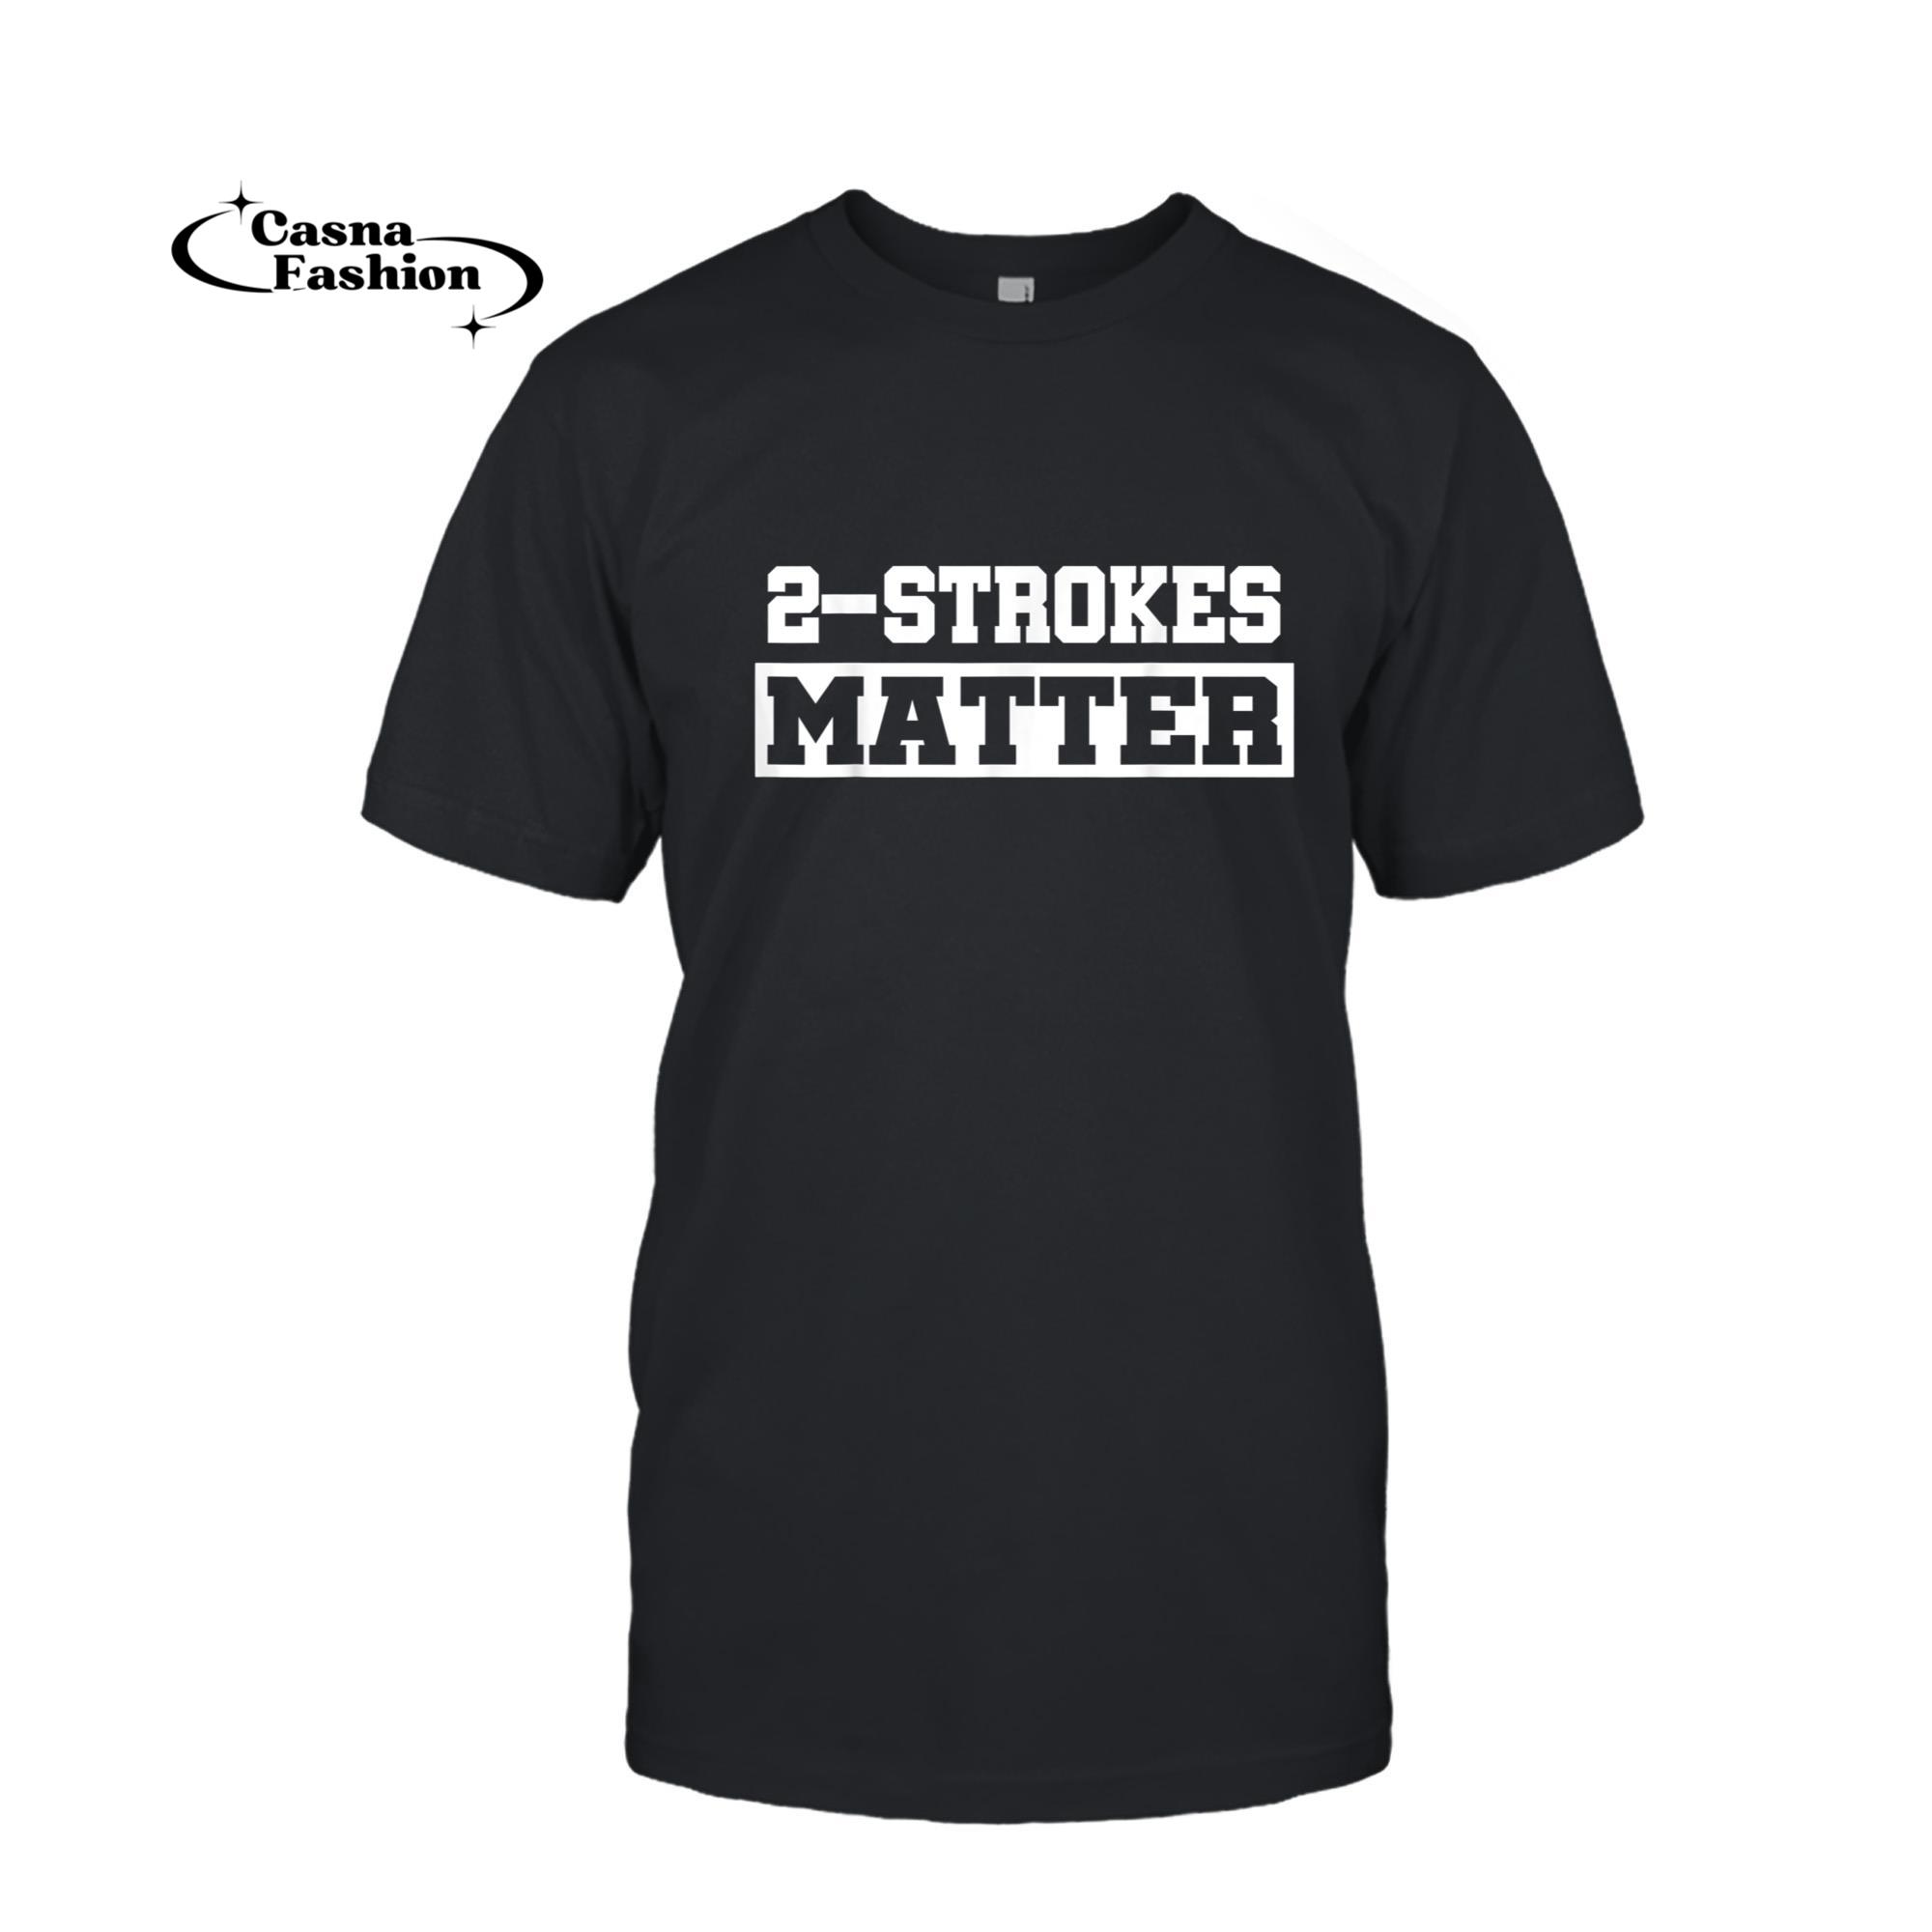 casnafashion_T-shirt_2 Strokes Matter! MX Motocross Dirt Biker TShirt Gift Idea T-Shirt_T-shirt_Black